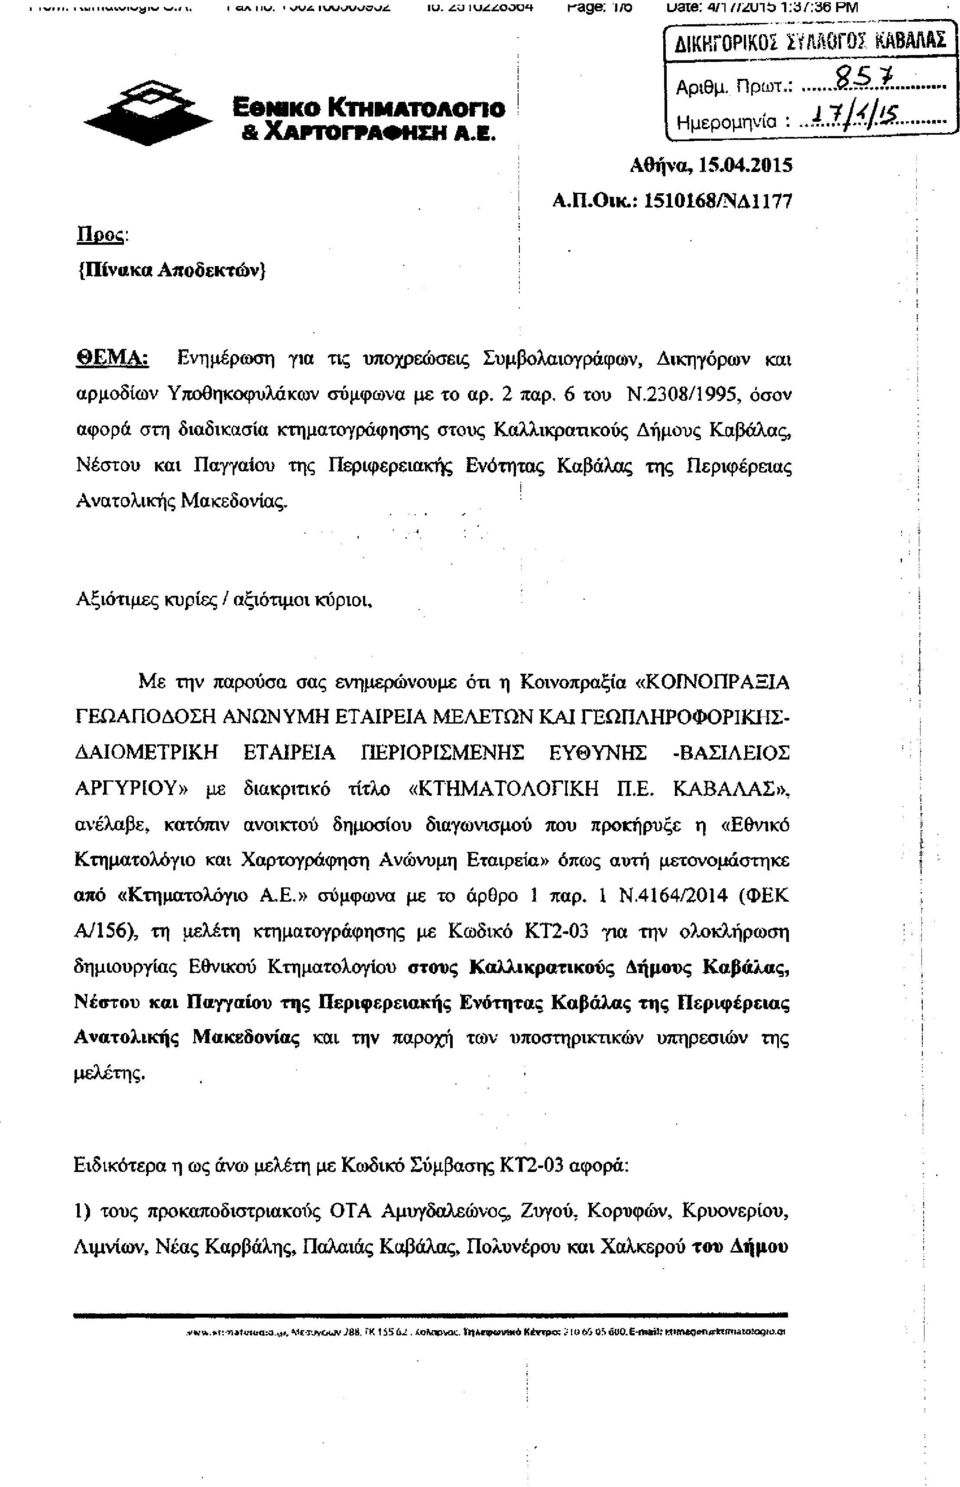 2308/1995, όσον αφορά στη διαδικασία κτηματογράφησης στους Καλλικρατικούς Δήμους Καβάλας, Νέστου και Παγγαίου της Περιφερειακής Ενότητας Καβάλας της Περιφέρειας Ανατολικής Μακεδονίας.